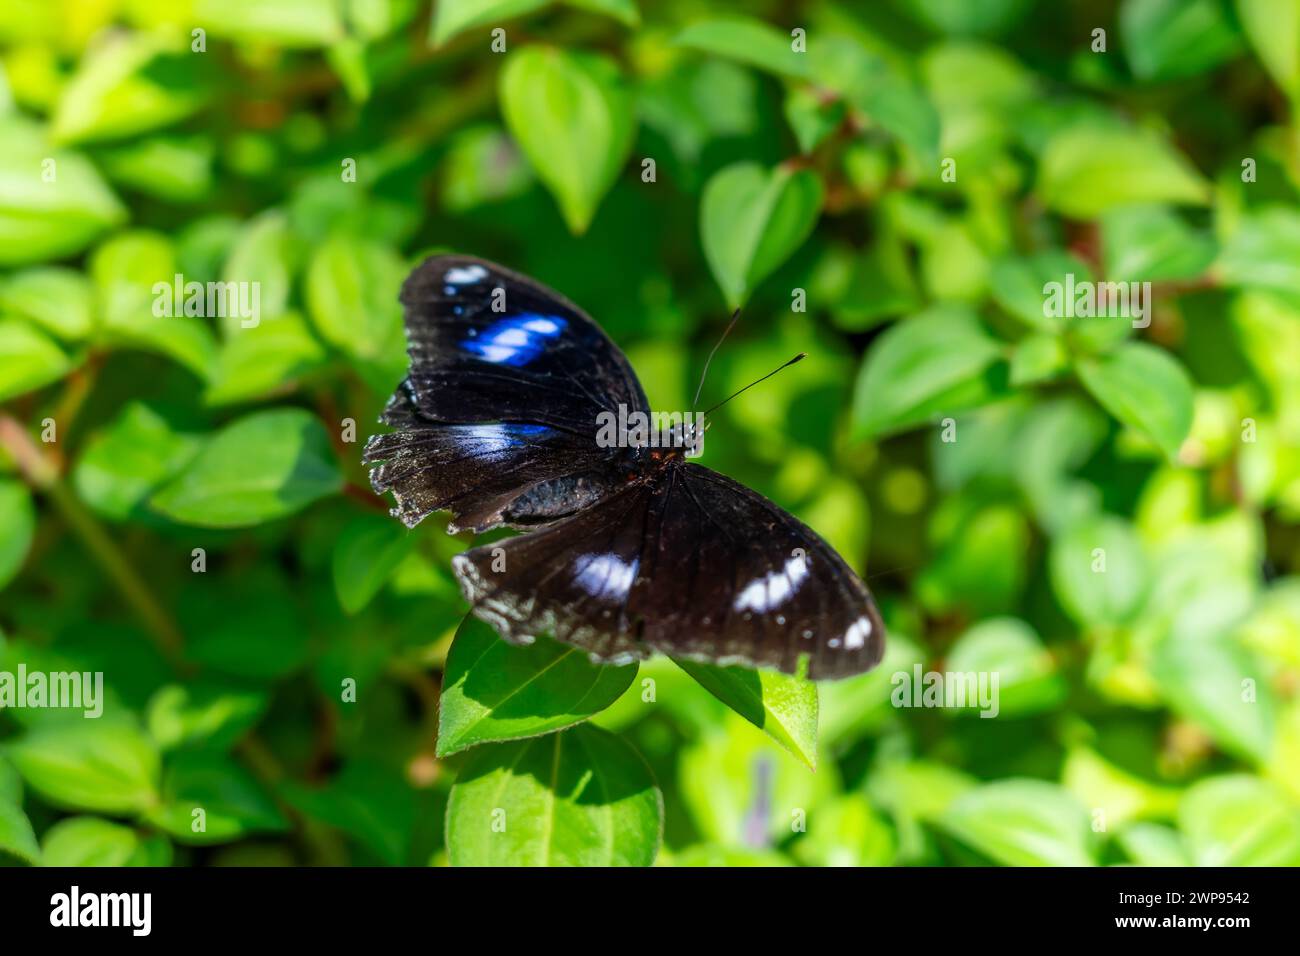 Grand papillon noir avec des fleurs bleues tache se trouve sur les feuilles d'un arbre tropical exotique forêt tropicale jungle. Banque D'Images